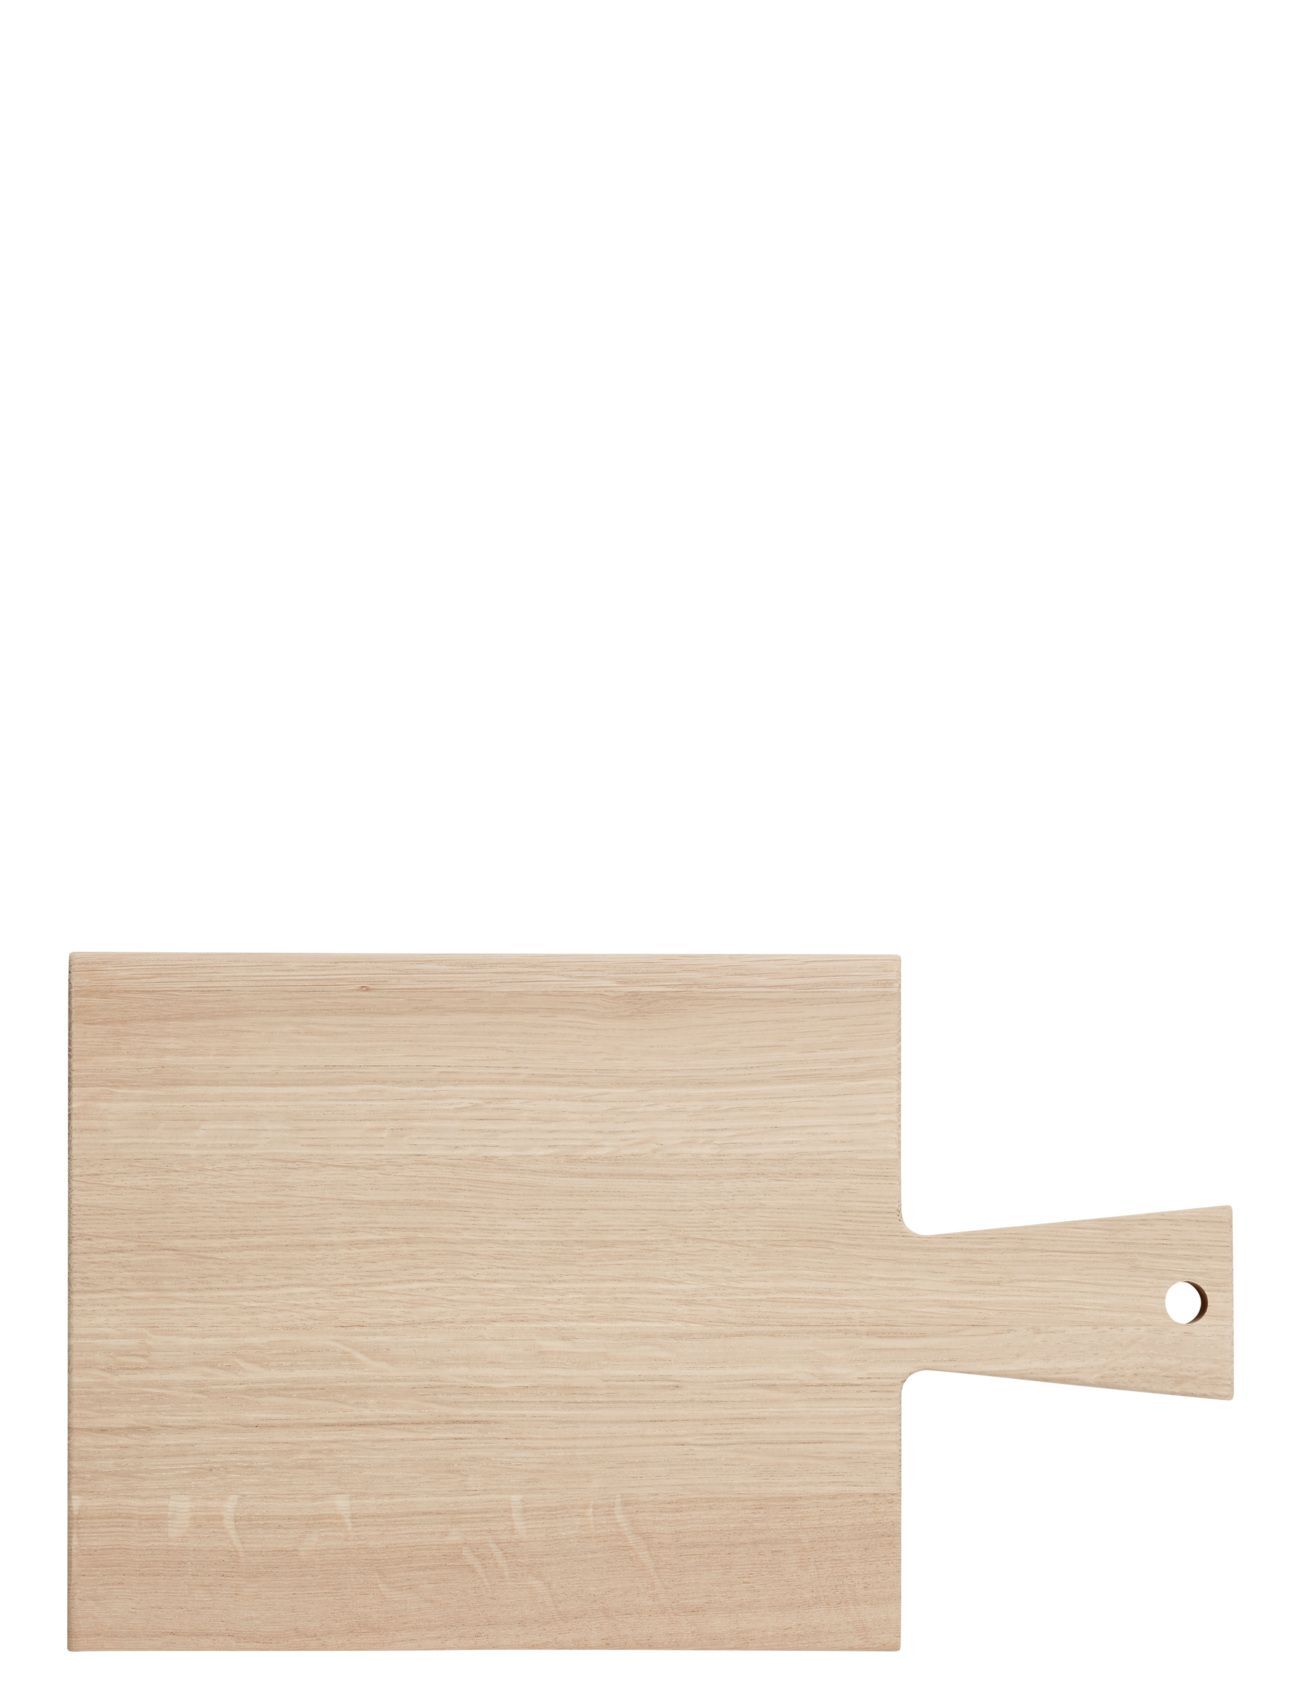 Andersen Furniture Servingboard Home Kitchen Kitchen Tools Cutting Boards Wooden Cutting Boards Beige Andersen Furniture